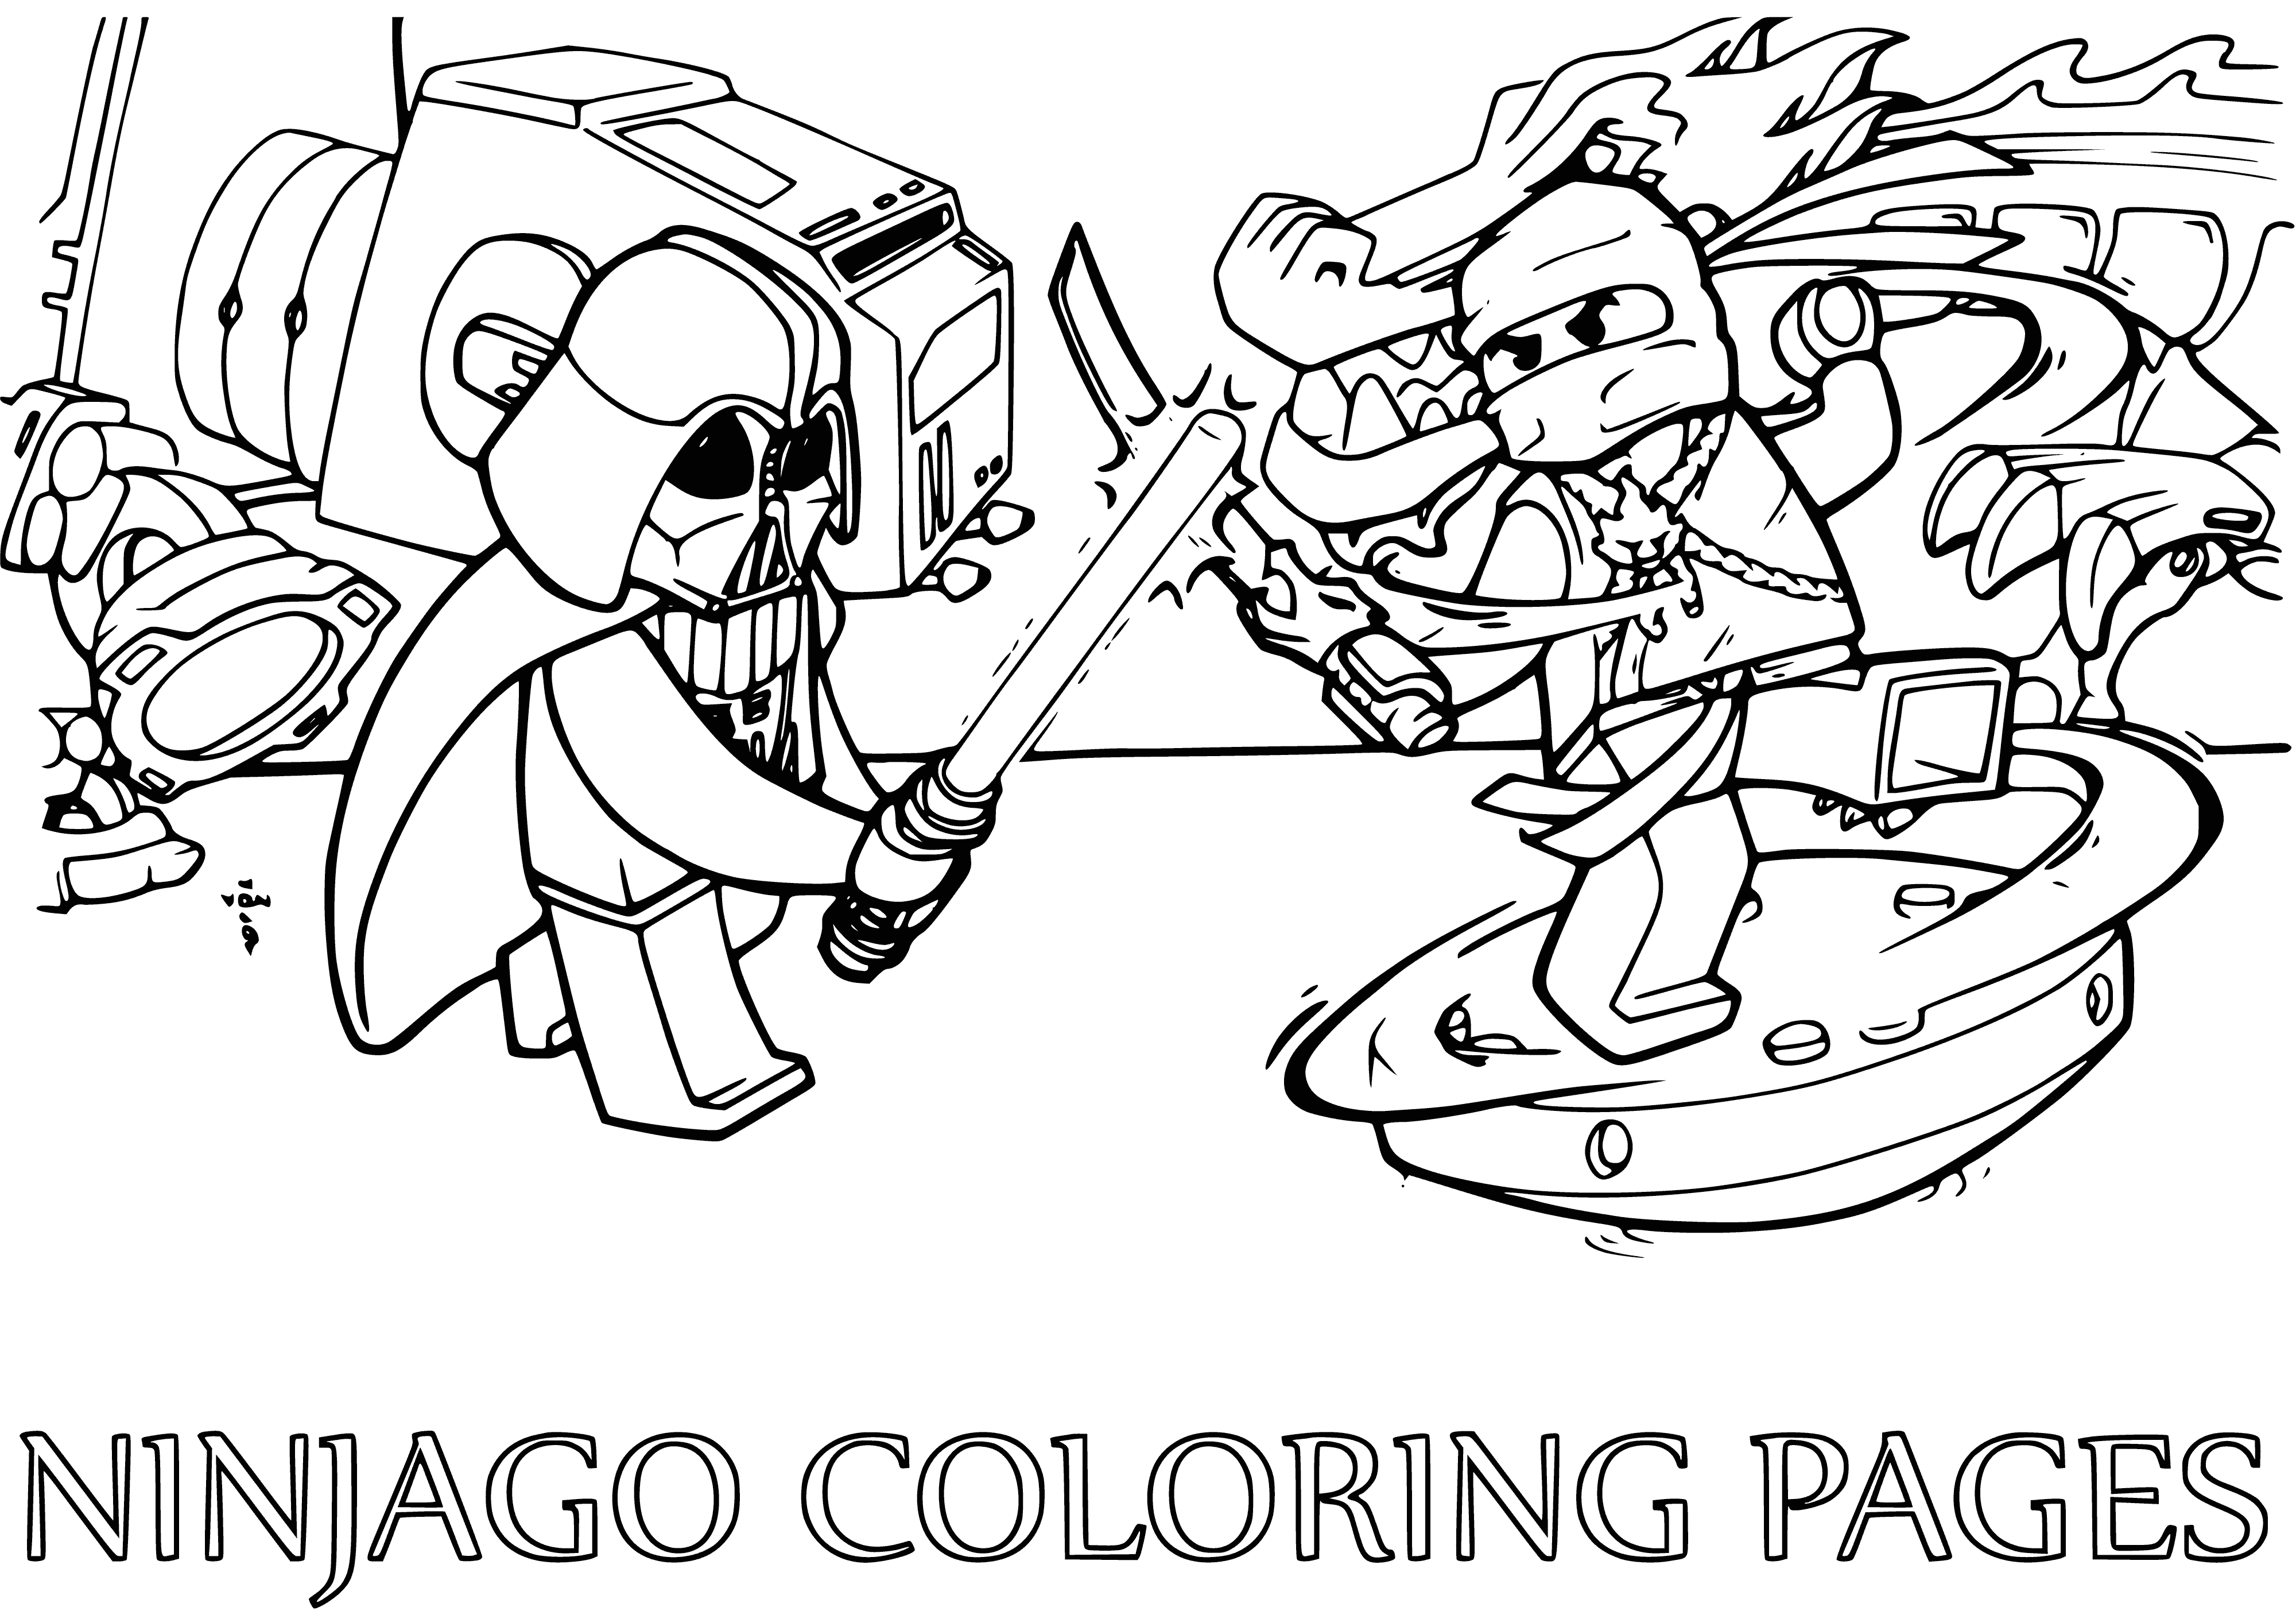 Crossover Ninjago and Darth Vader coloring page